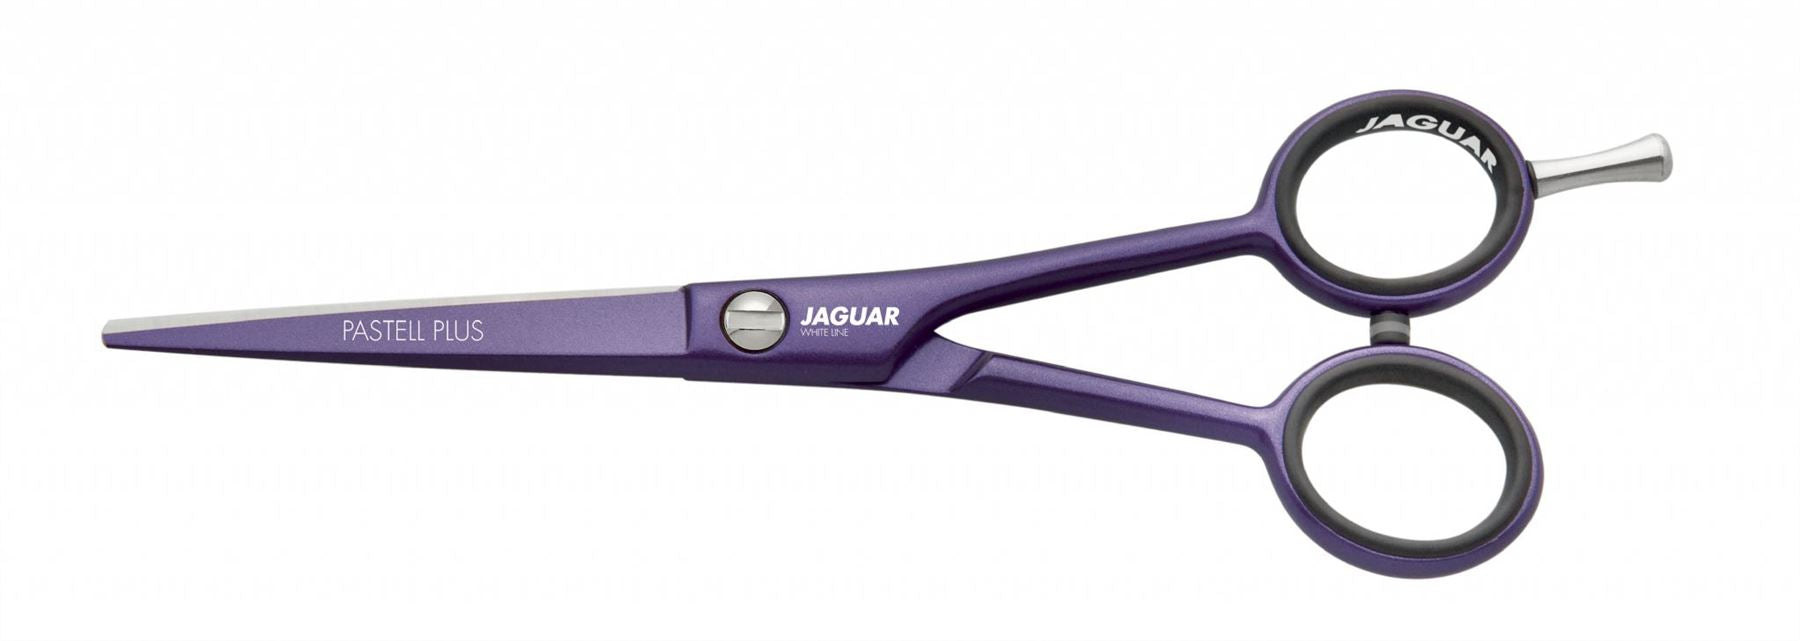 Jaguar Pastell Plus 5.5" Hairdressing Scissors - Viola